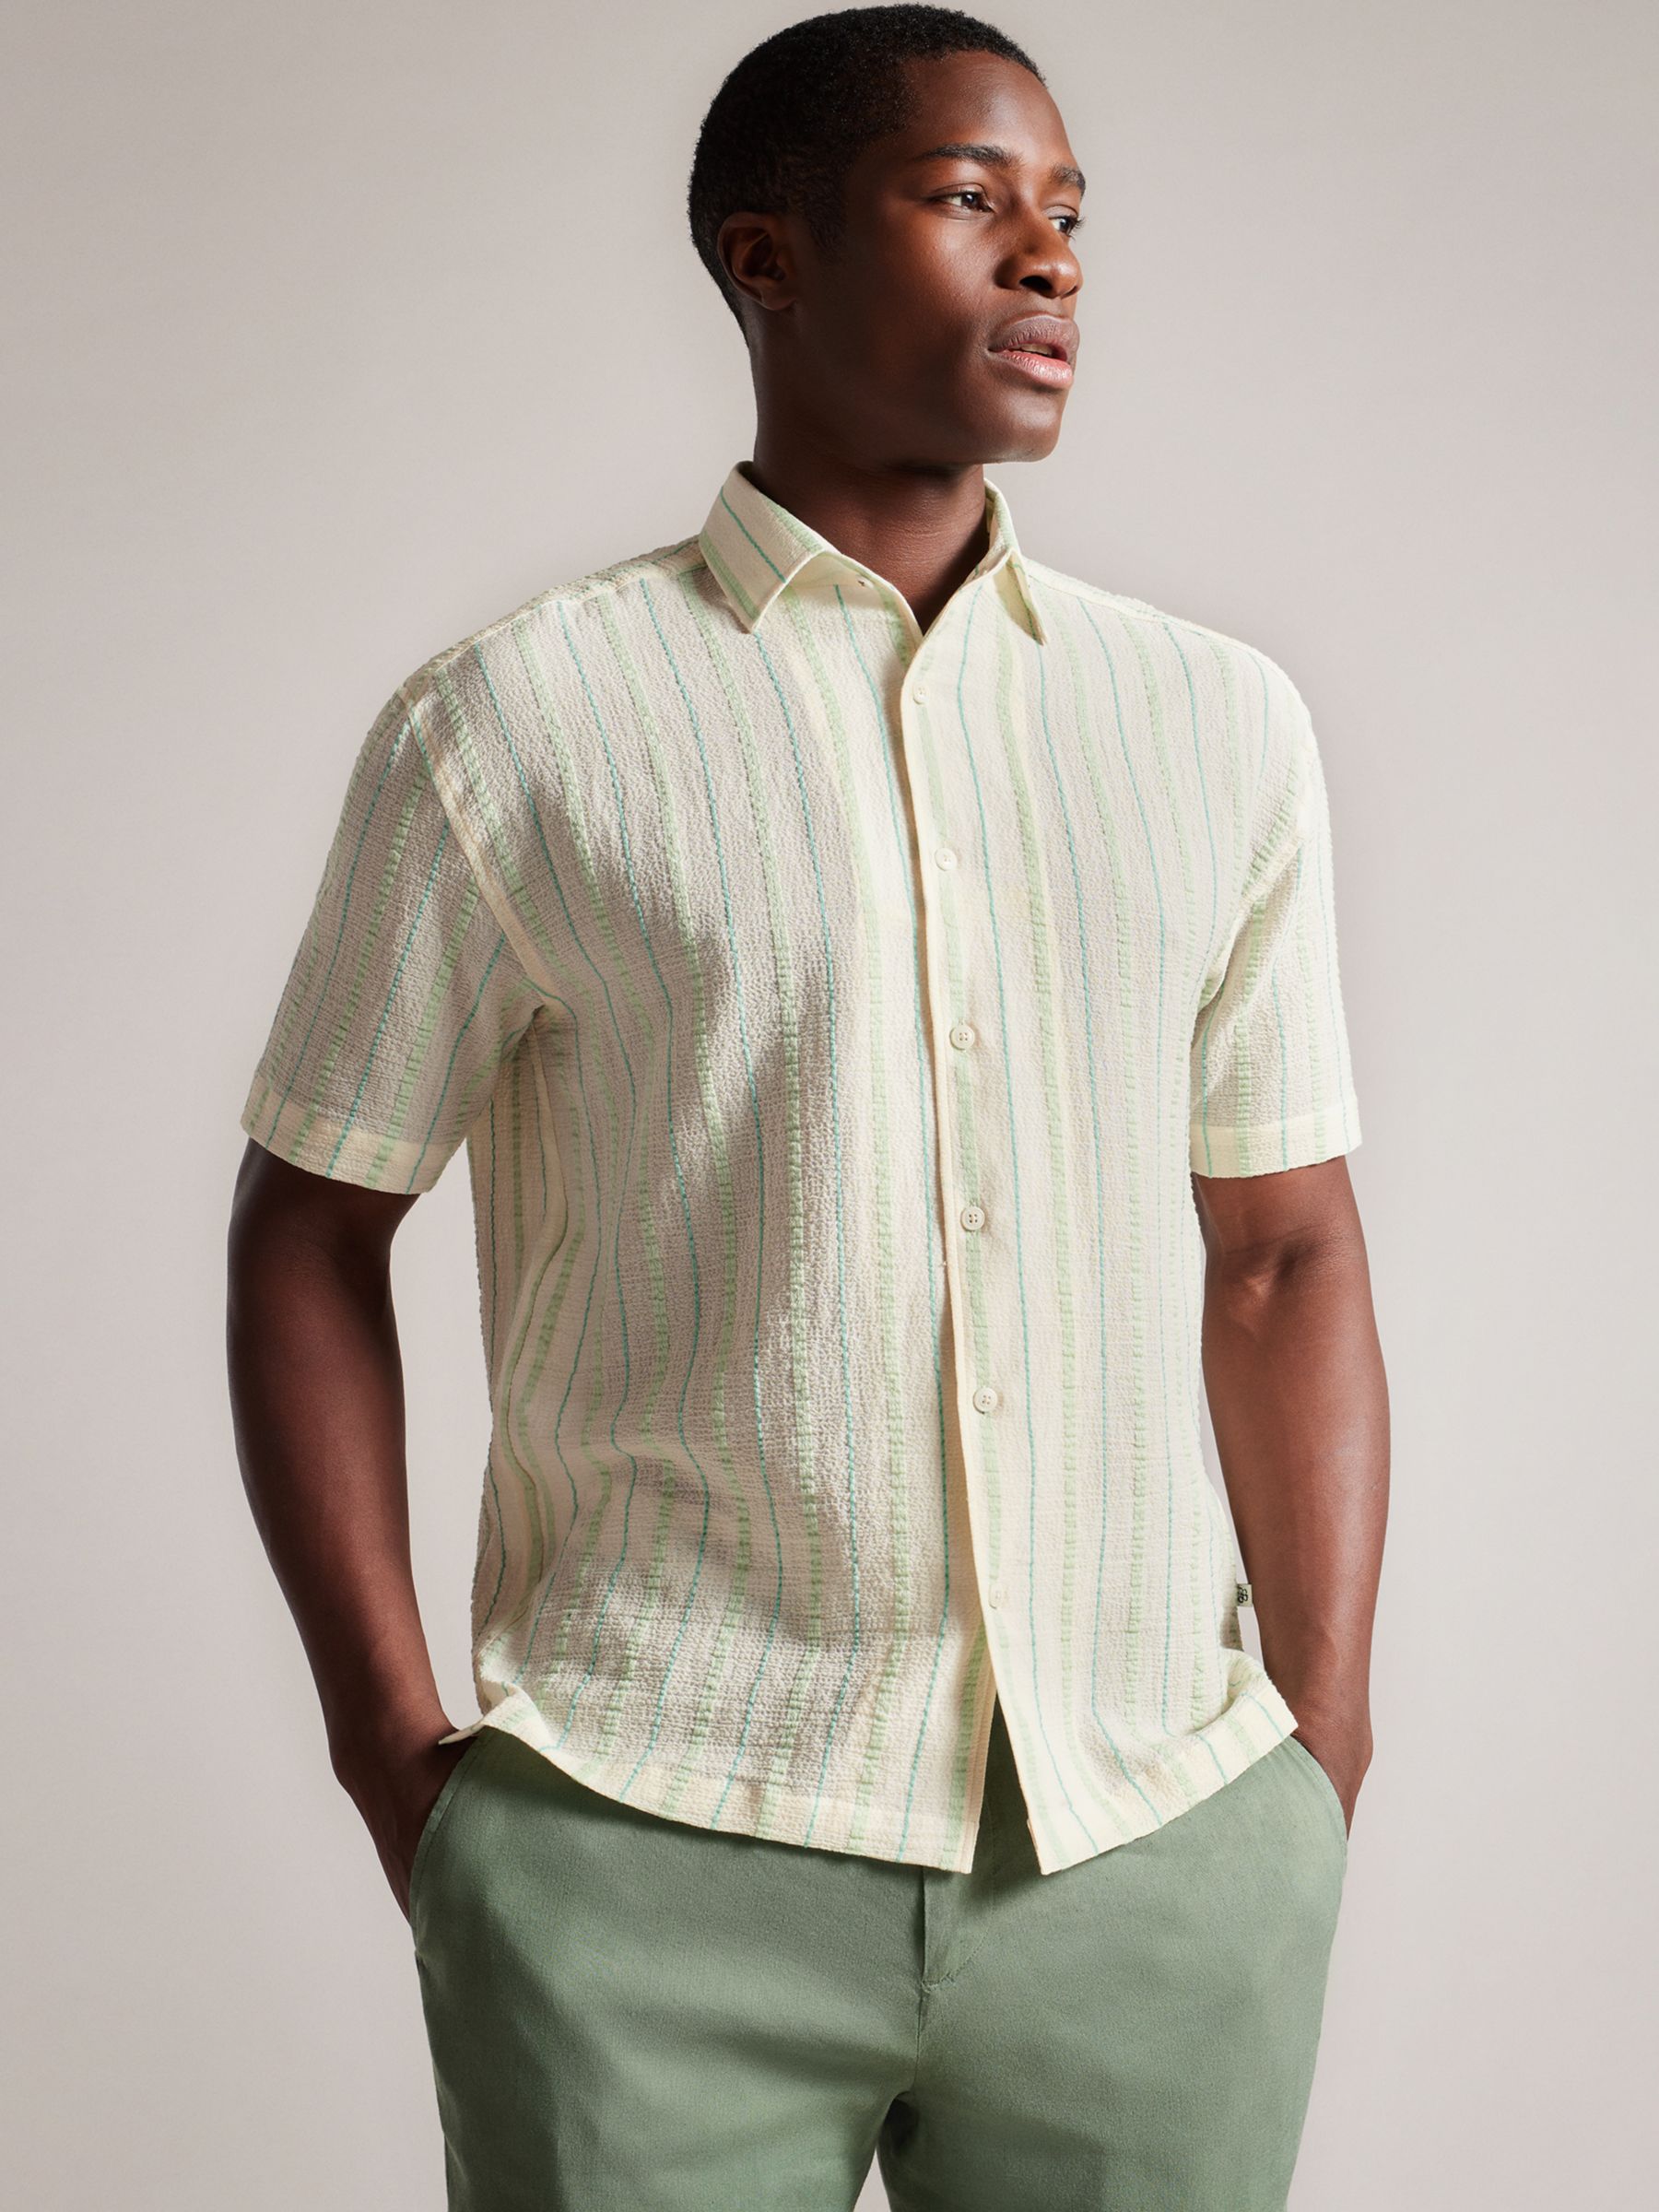 Ted Baker Hillma Short Sleeve Seersucker Stripe Shirt, Light Green, XXL